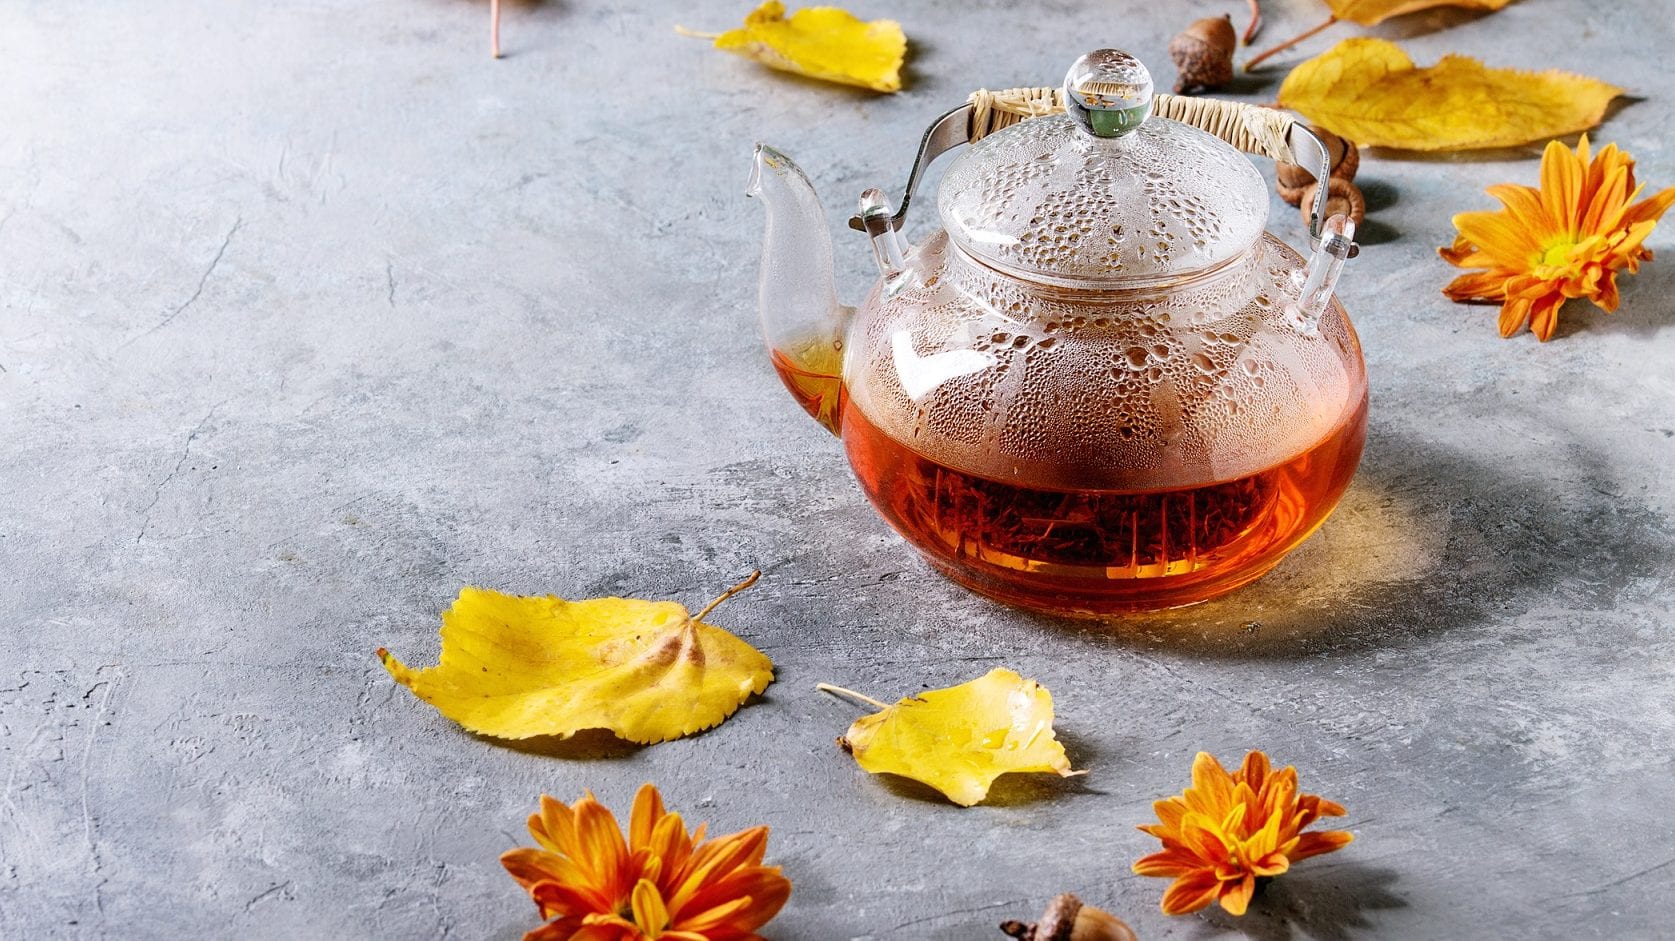 Da kommt heiße Herbststimmung auf: Unser Vanille-Kokos-Tee brüht in der Glas-Teekanne. Ringsum liegen bunte Blätter.